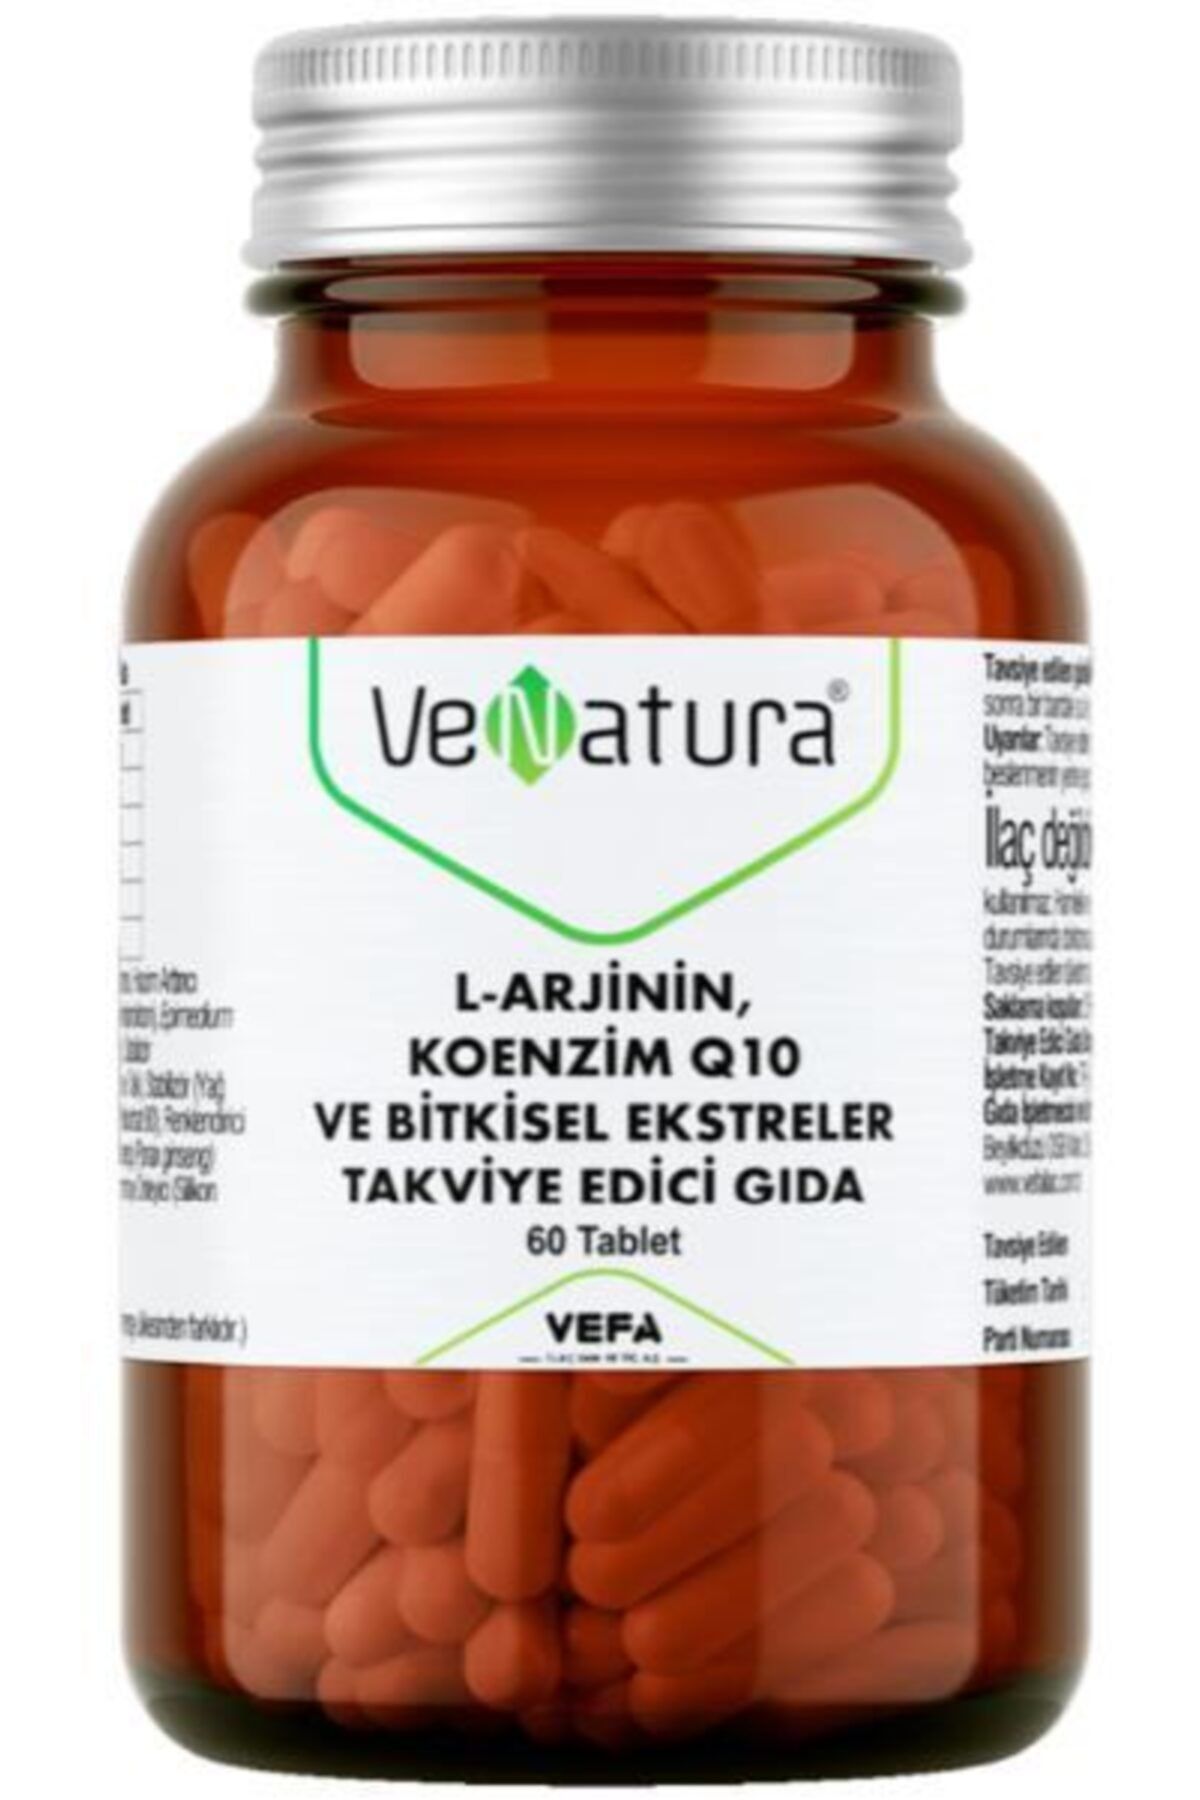 Venatura L-arjinin Koenzim Q10 60 Tablet